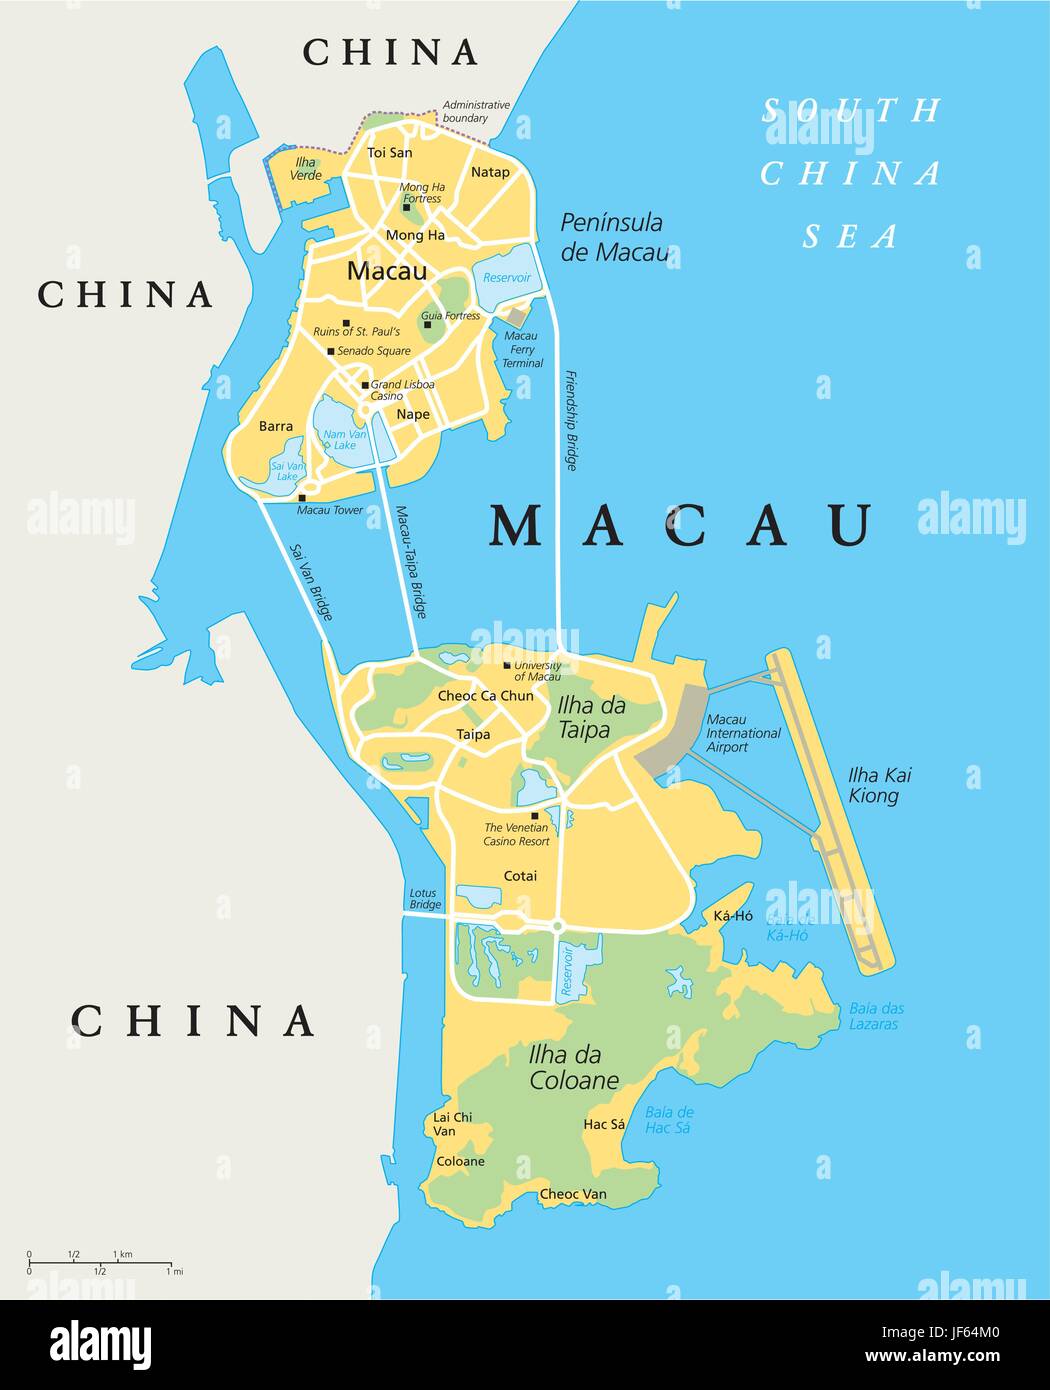 La Chine, jeu de hasard, jeux de hasard, Macau, carte, atlas, carte du monde, voyage, Illustration de Vecteur